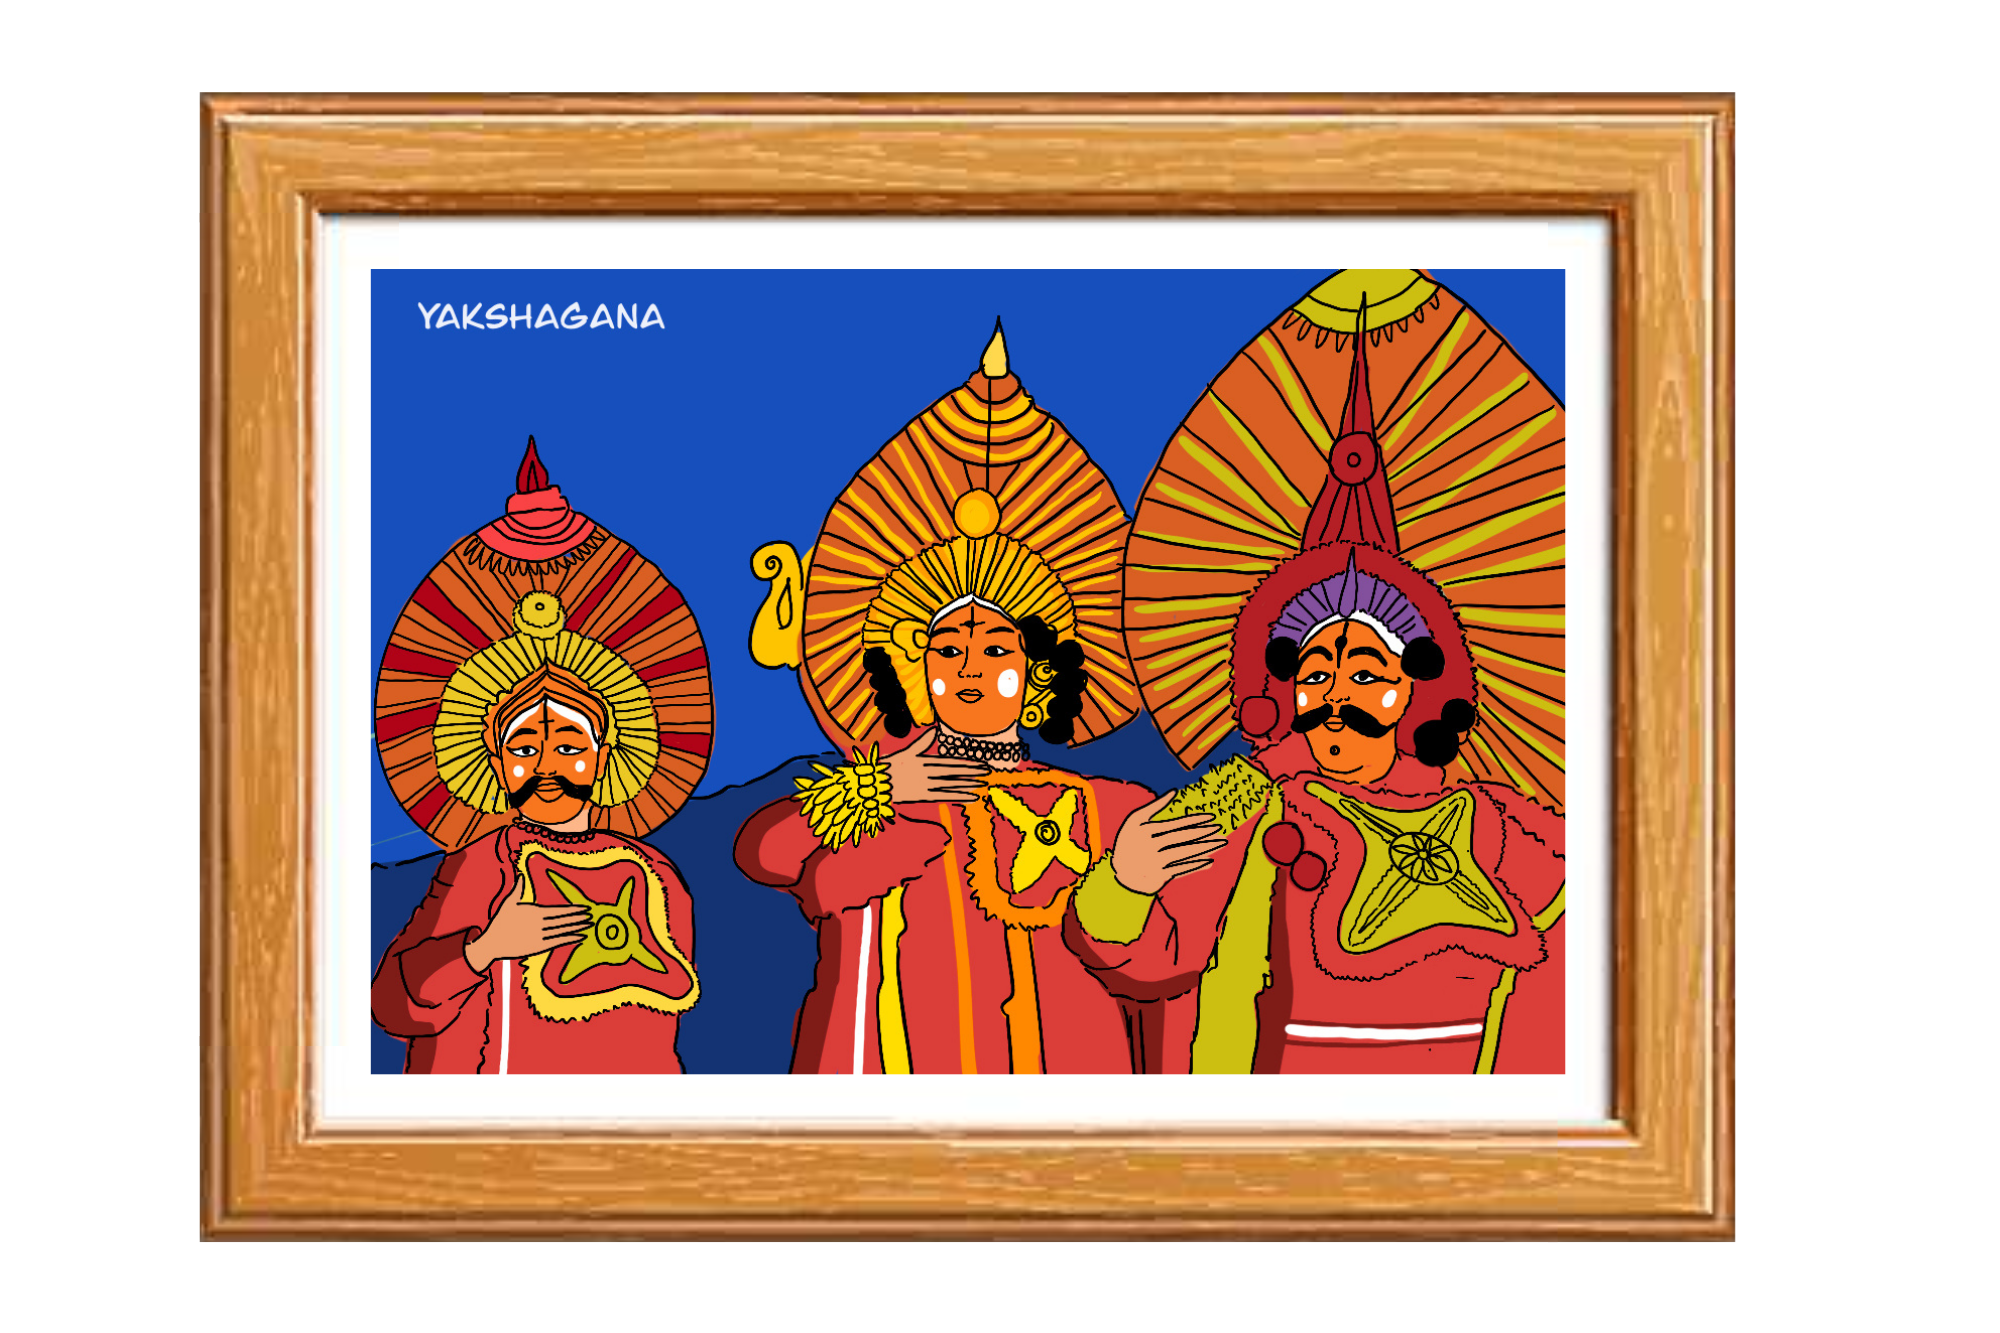 FlippAR's Yakshagana Wall Art